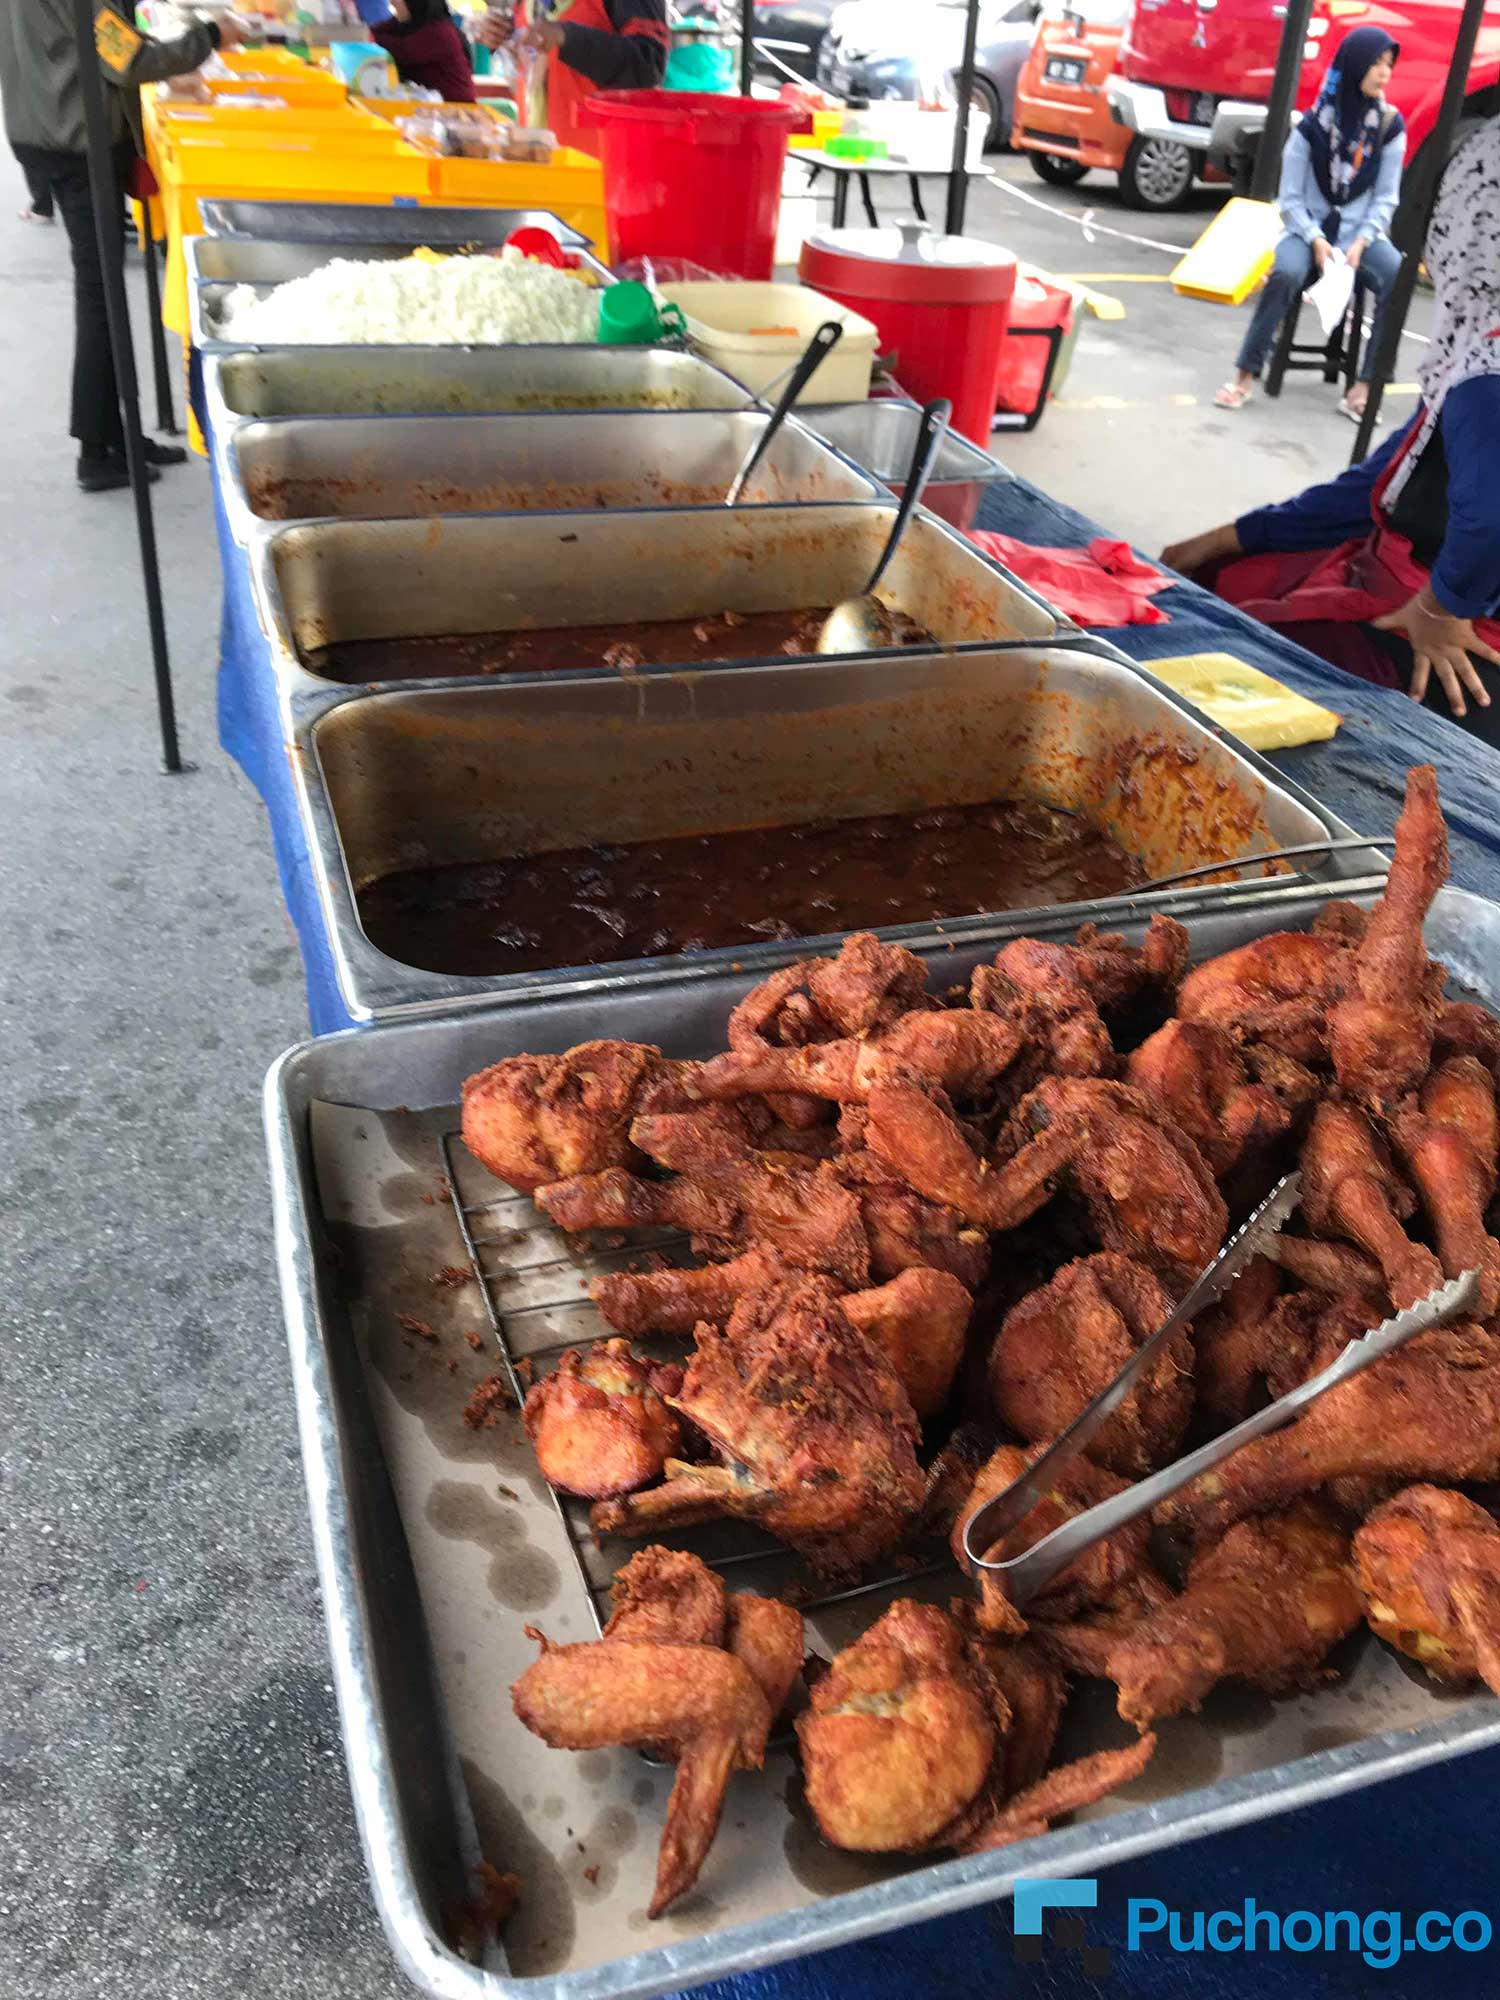 Ramadan Bazaar and Food Stalls at Puchong Year 2019 - Food 